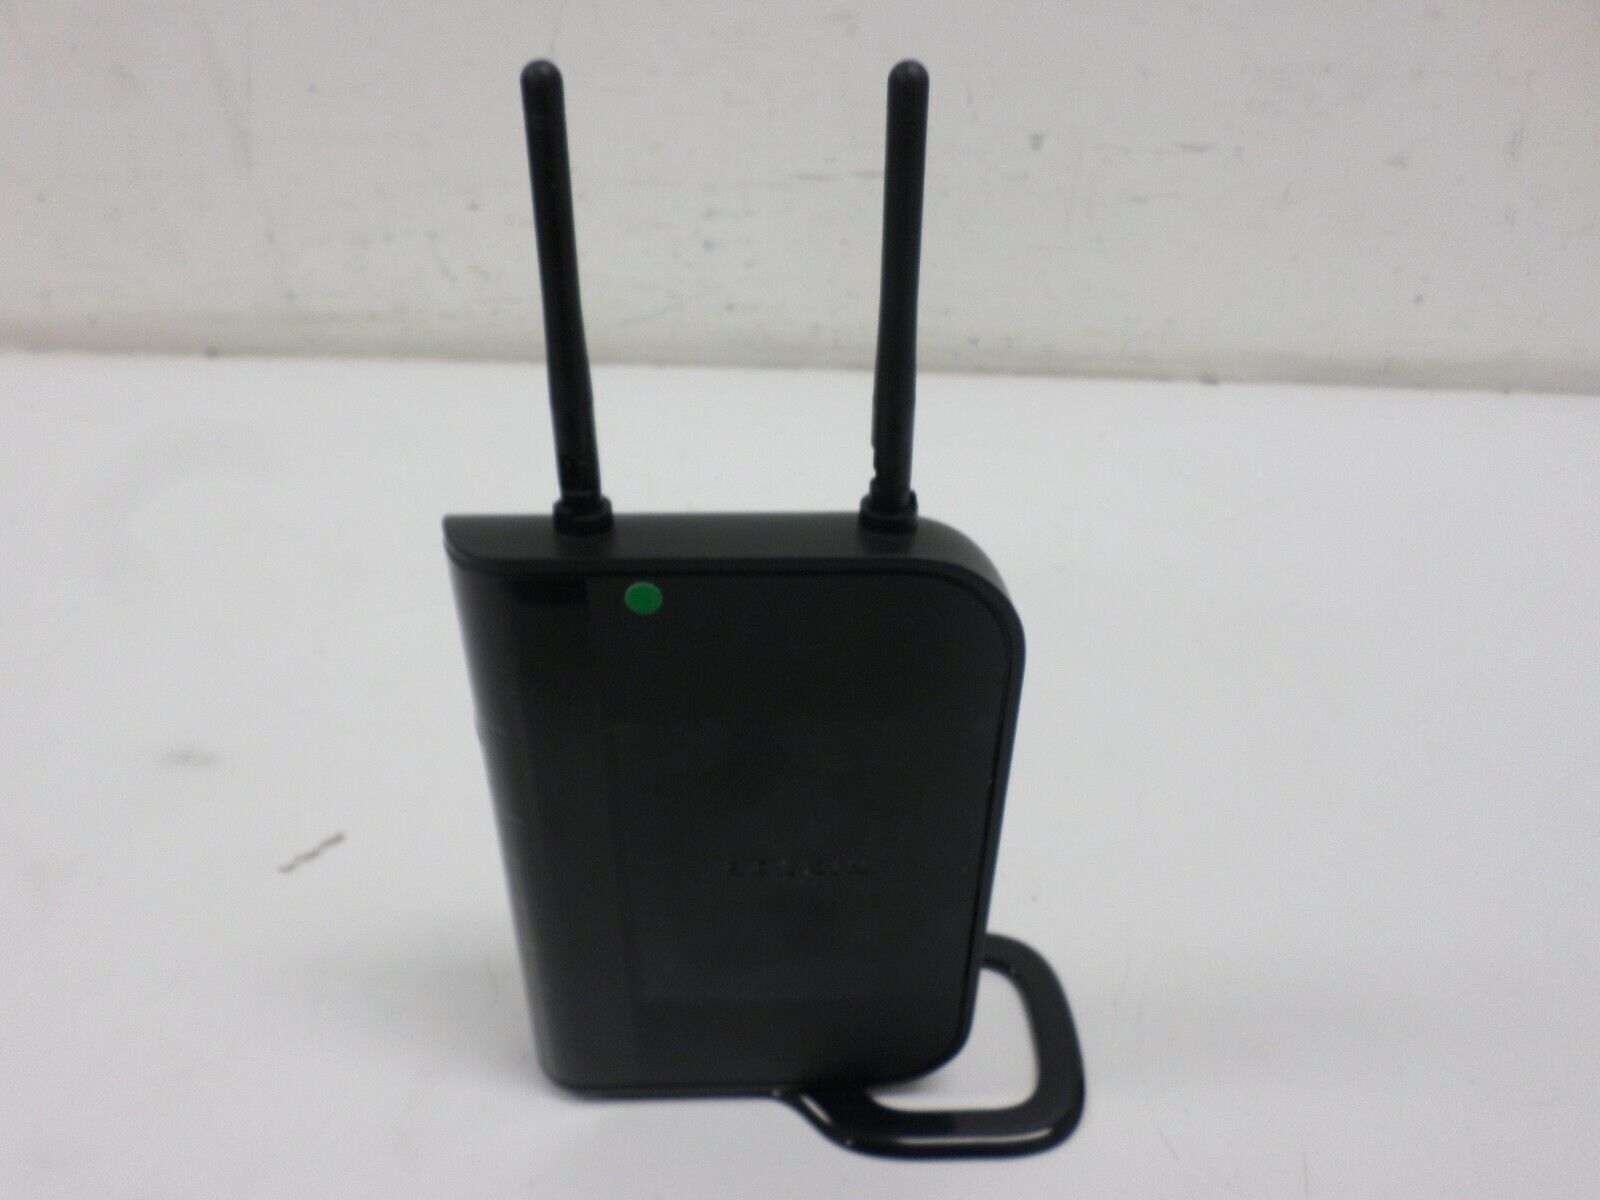 Belkin 300 Mbps 4 Port Wireless N Router - Belkin F5D8236-4 v1 